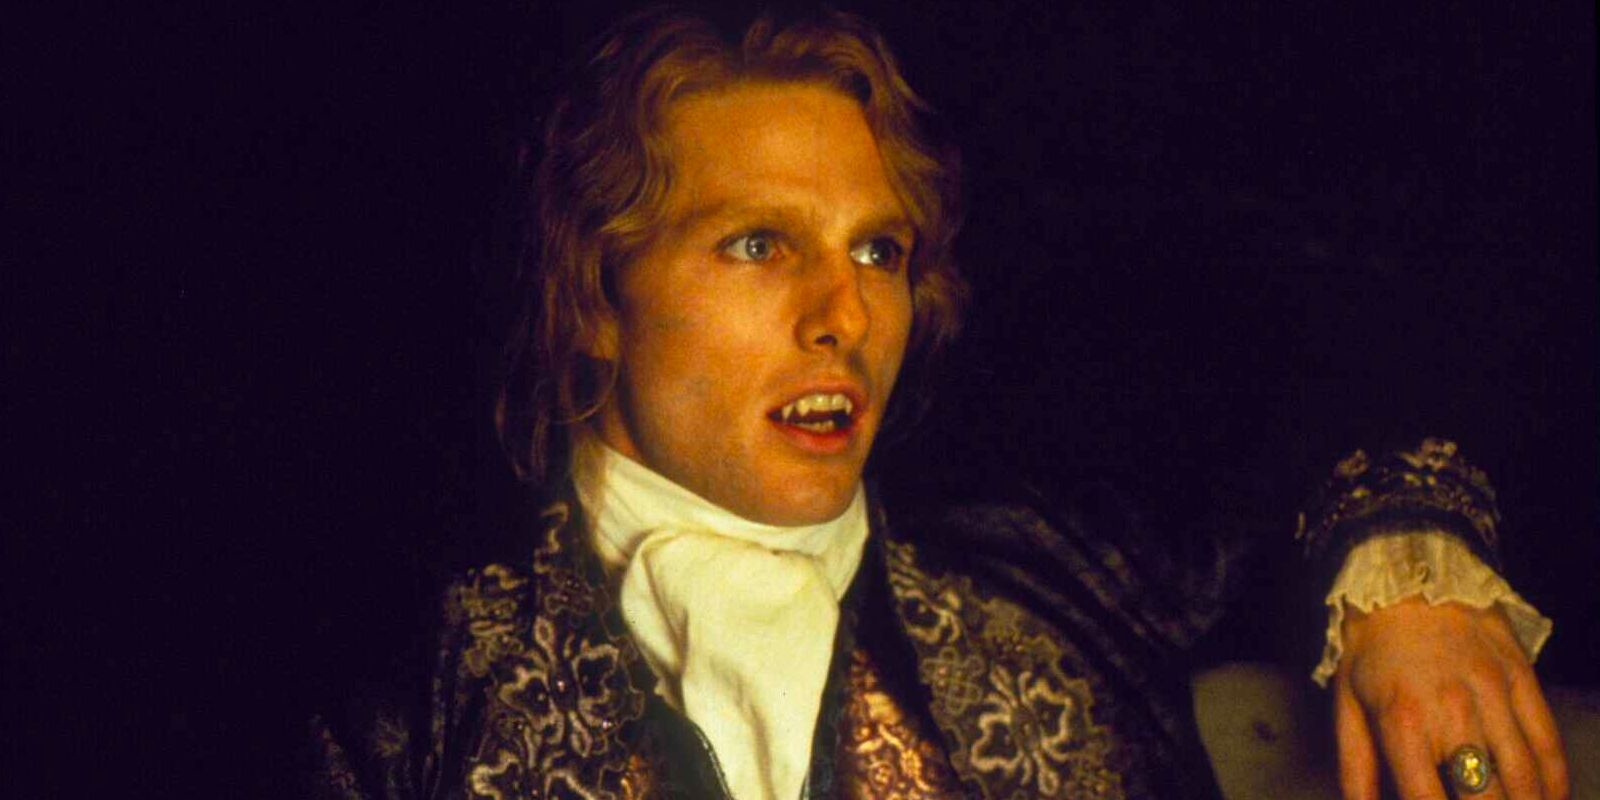 Lestat de Lioncourt, un vampiro centenario, está sentado en una habitación a oscuras y adornado con un elegante atuendo del siglo XVIII.